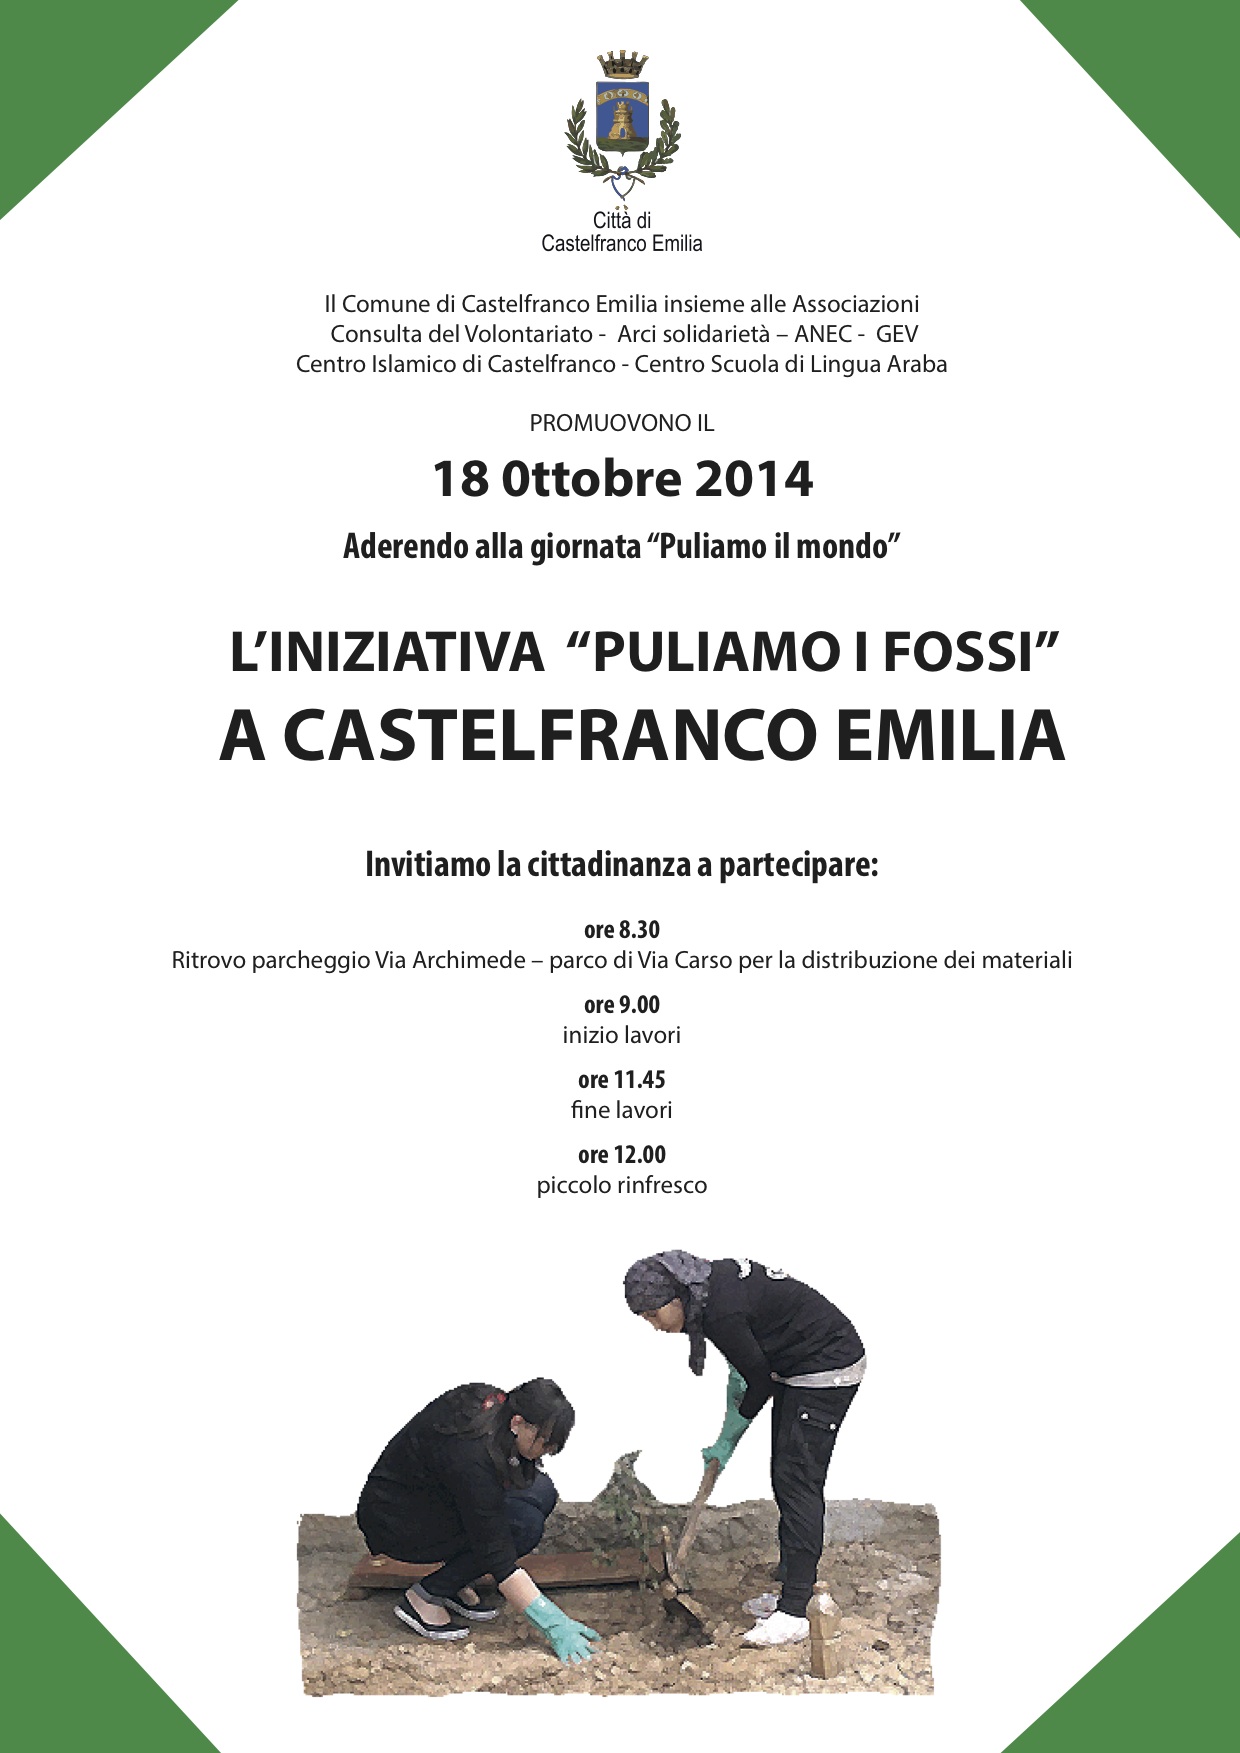 Sabato 18 ottobre iniziativa 'Puliamo i fossi' a Castelfranco Emilia 